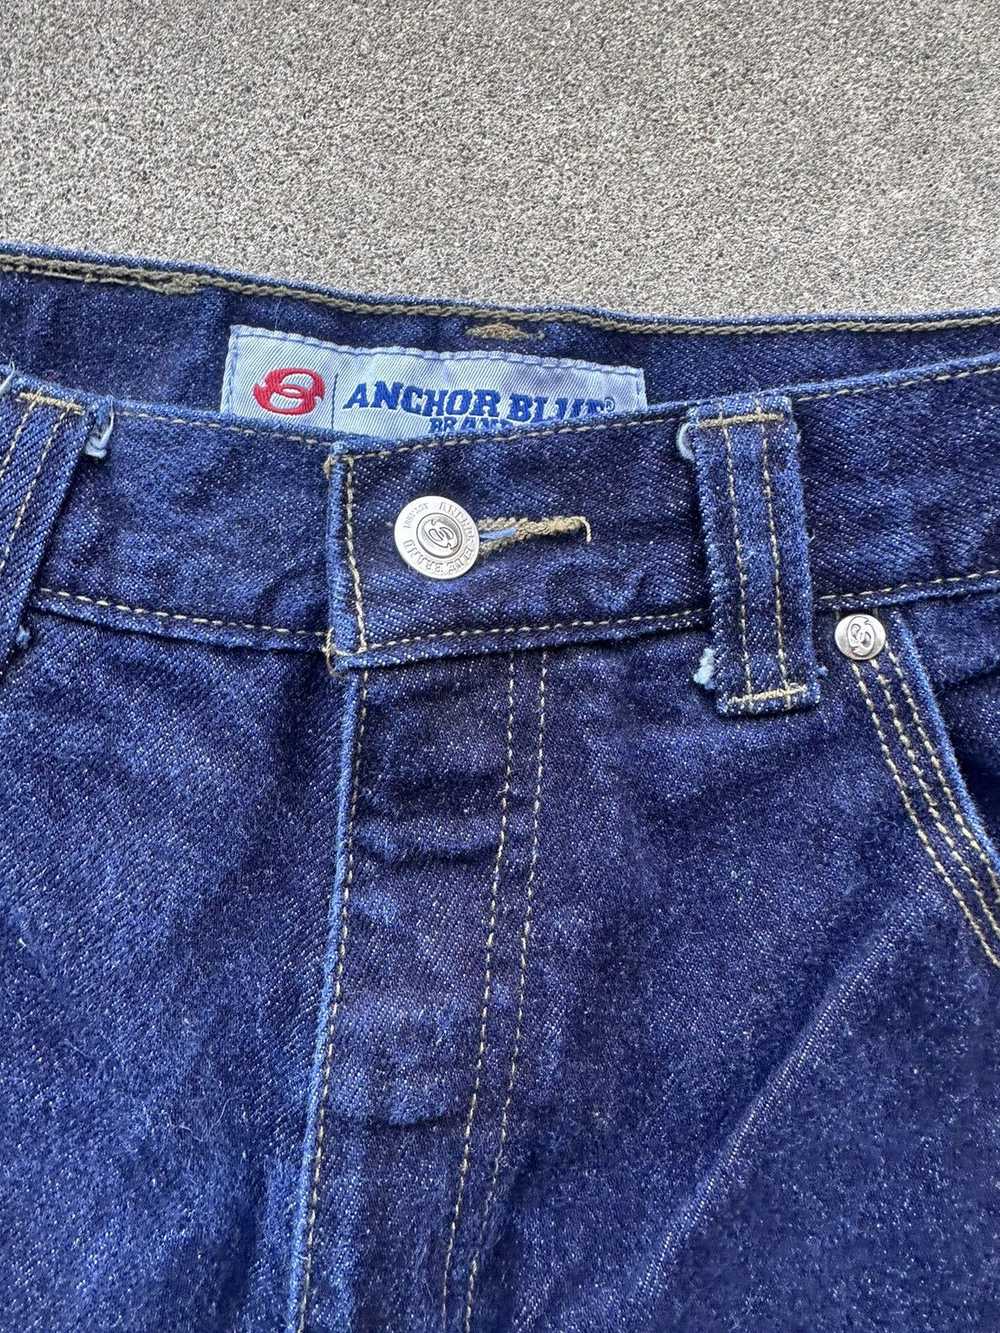 Anchor Blue × Vintage Vintage Anchor Blue Jeans 3… - image 2